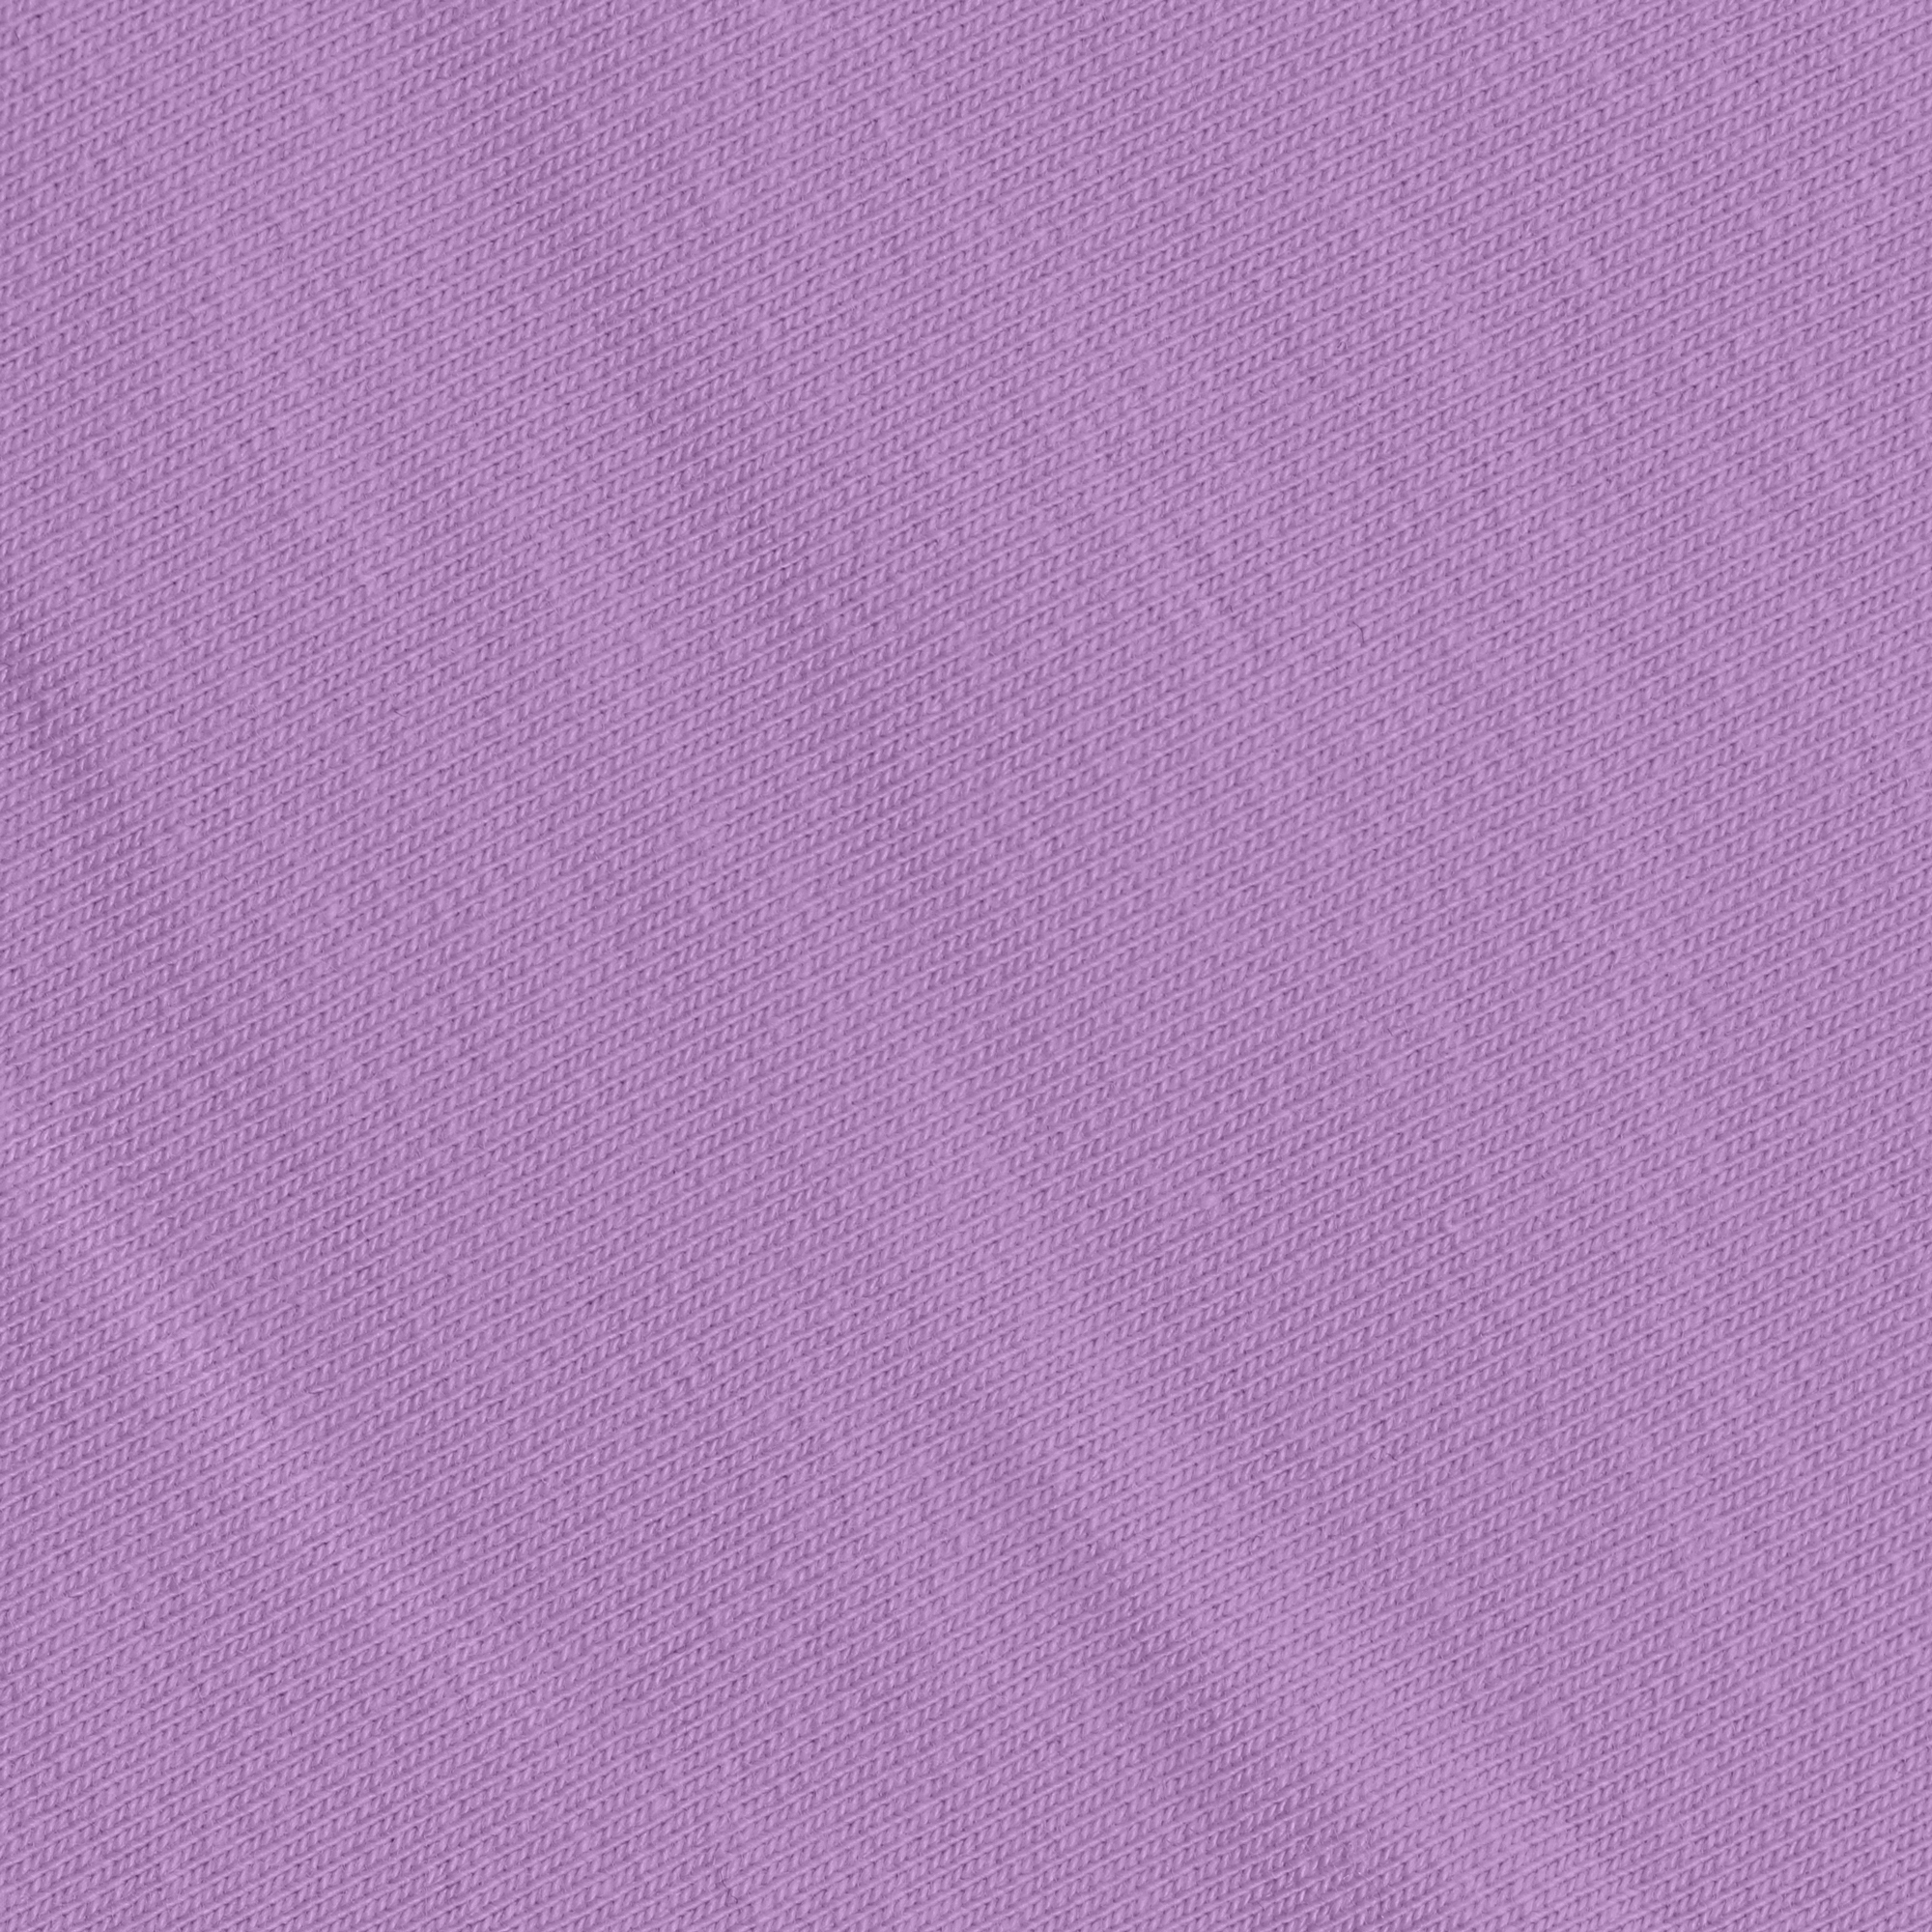 Брюки женские Birlik сиреневые, цвет сиреневый, размер XL - фото 2